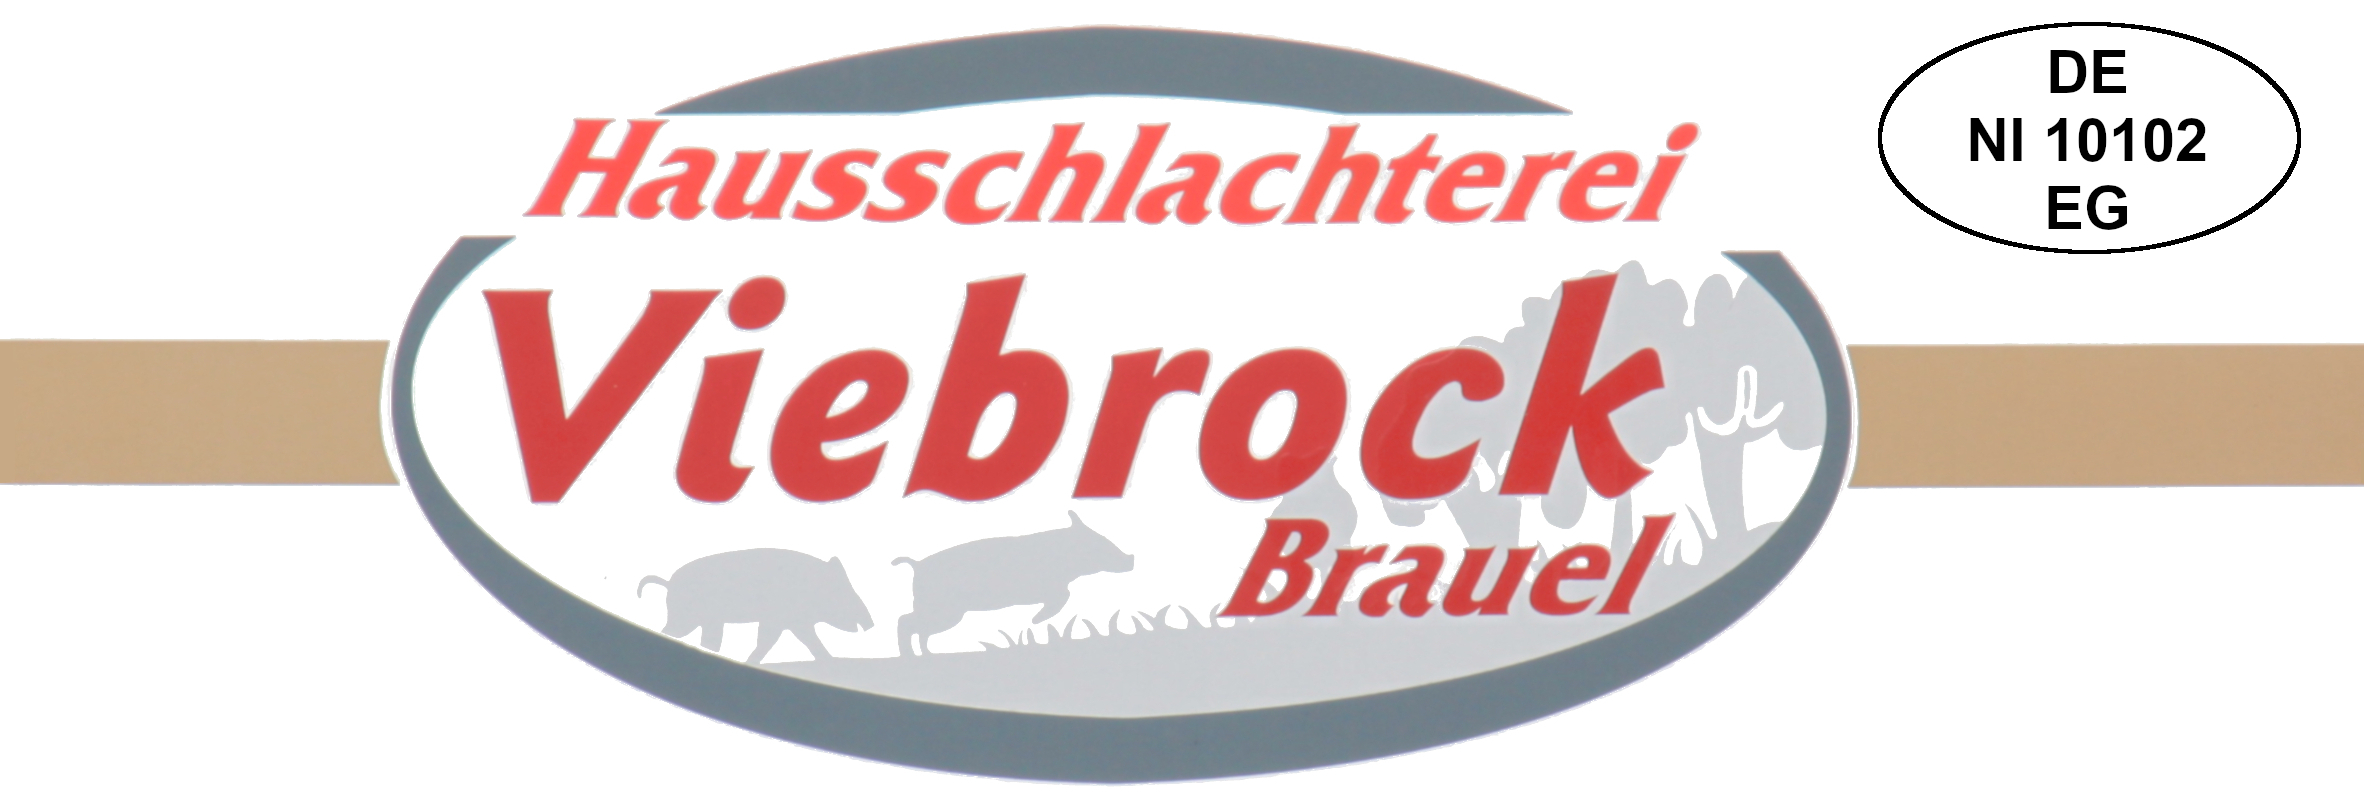 Hausschlachterei Viebrock Logo DE